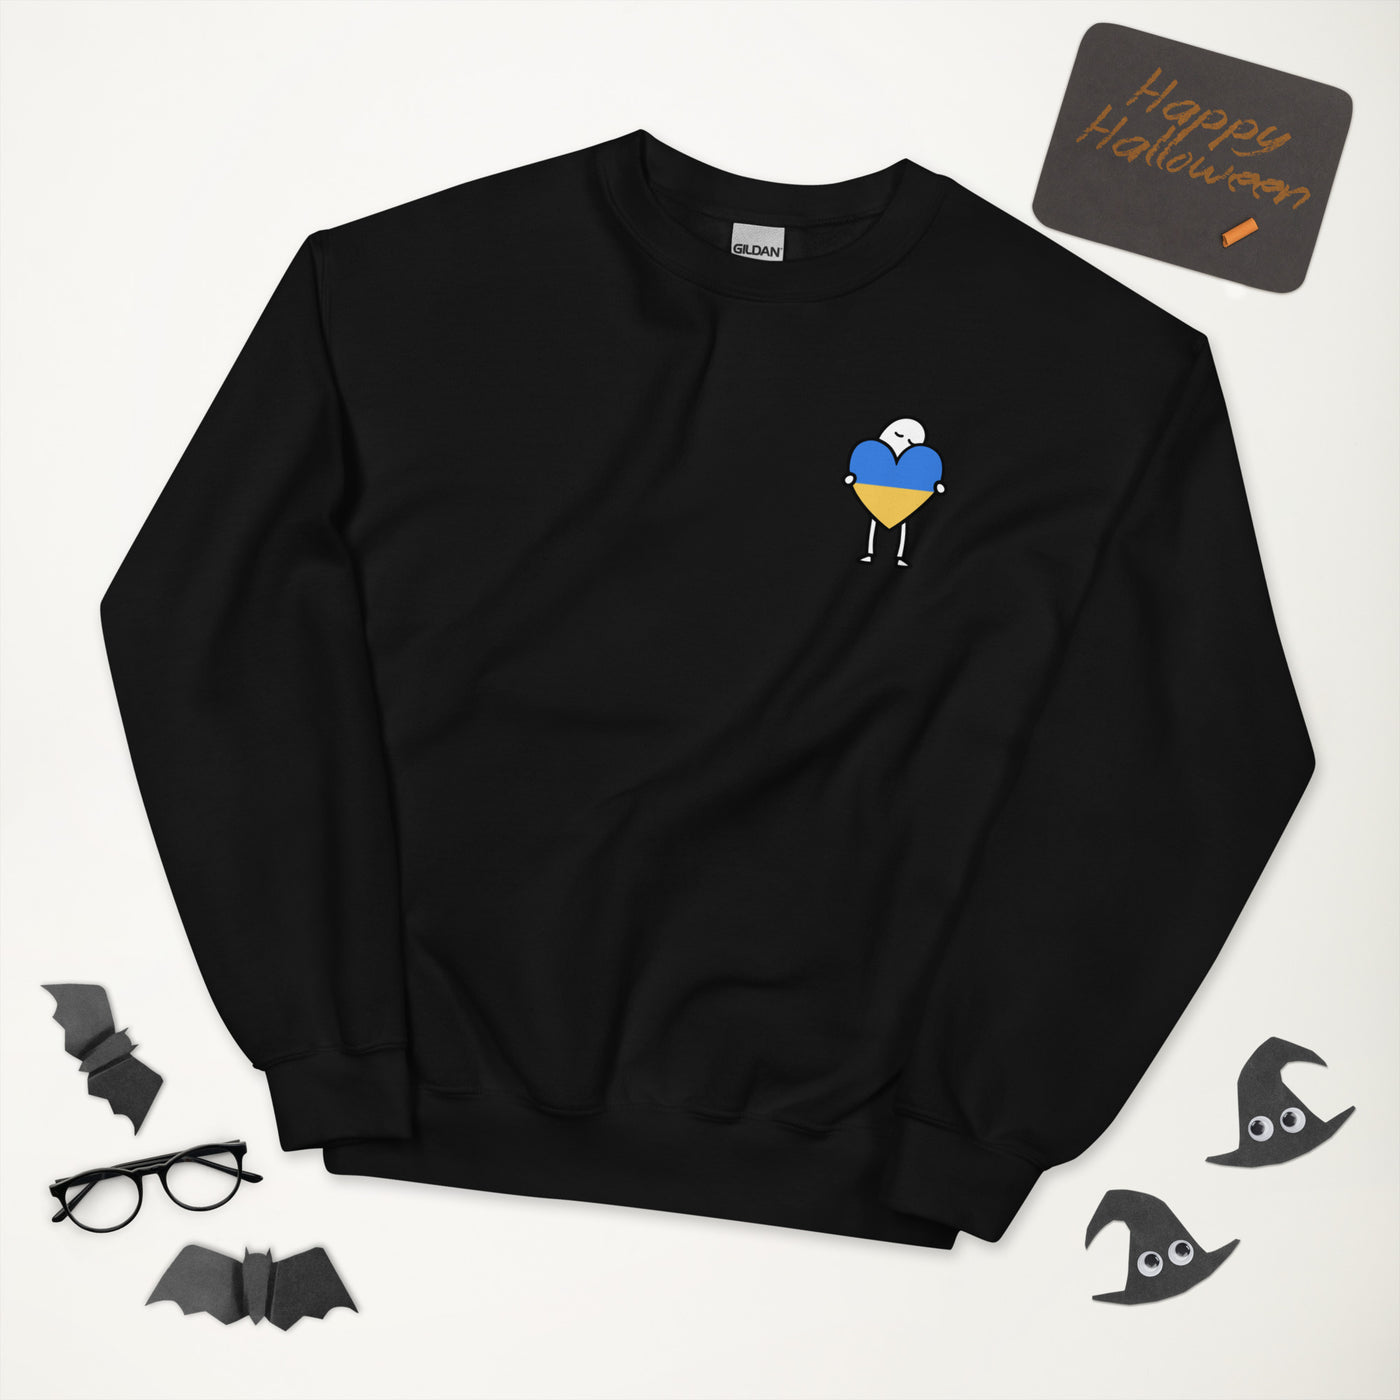 Liebe zur Ukraine 6 Sweatshirt-Print